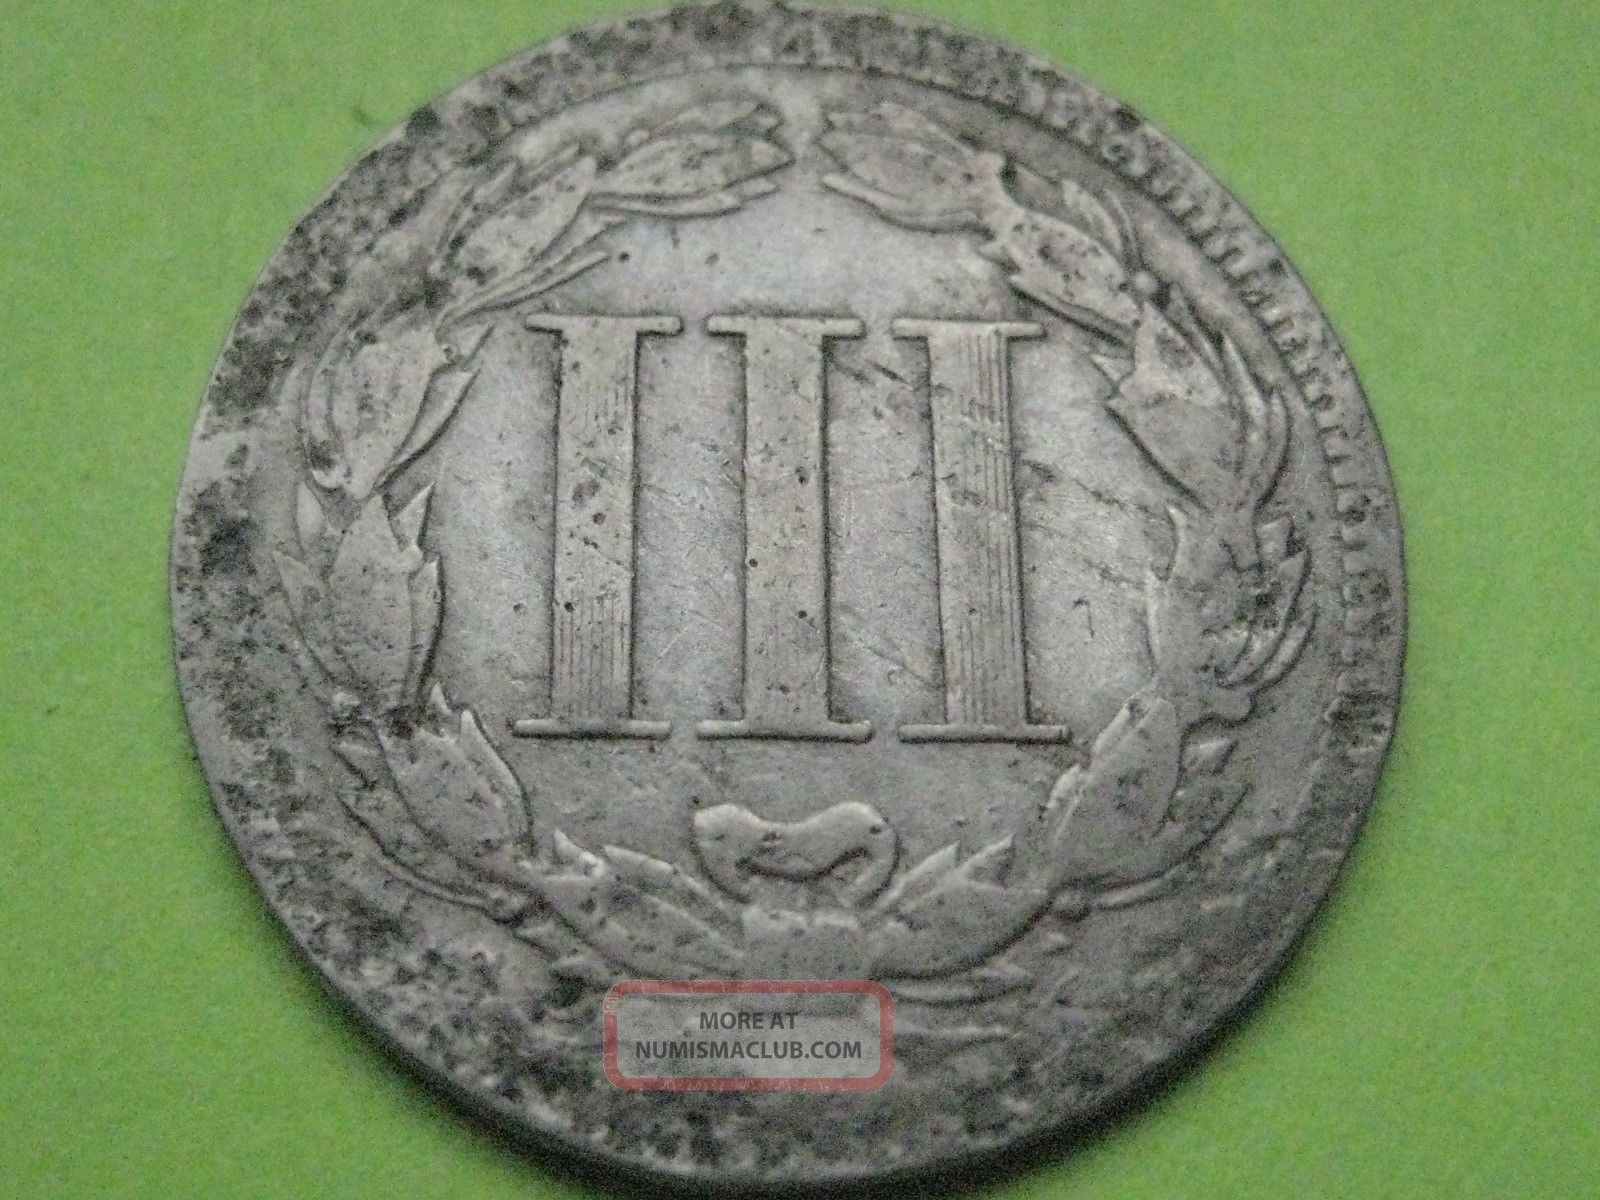 1868 Three 3 Cent Nickel - Good/vg Details